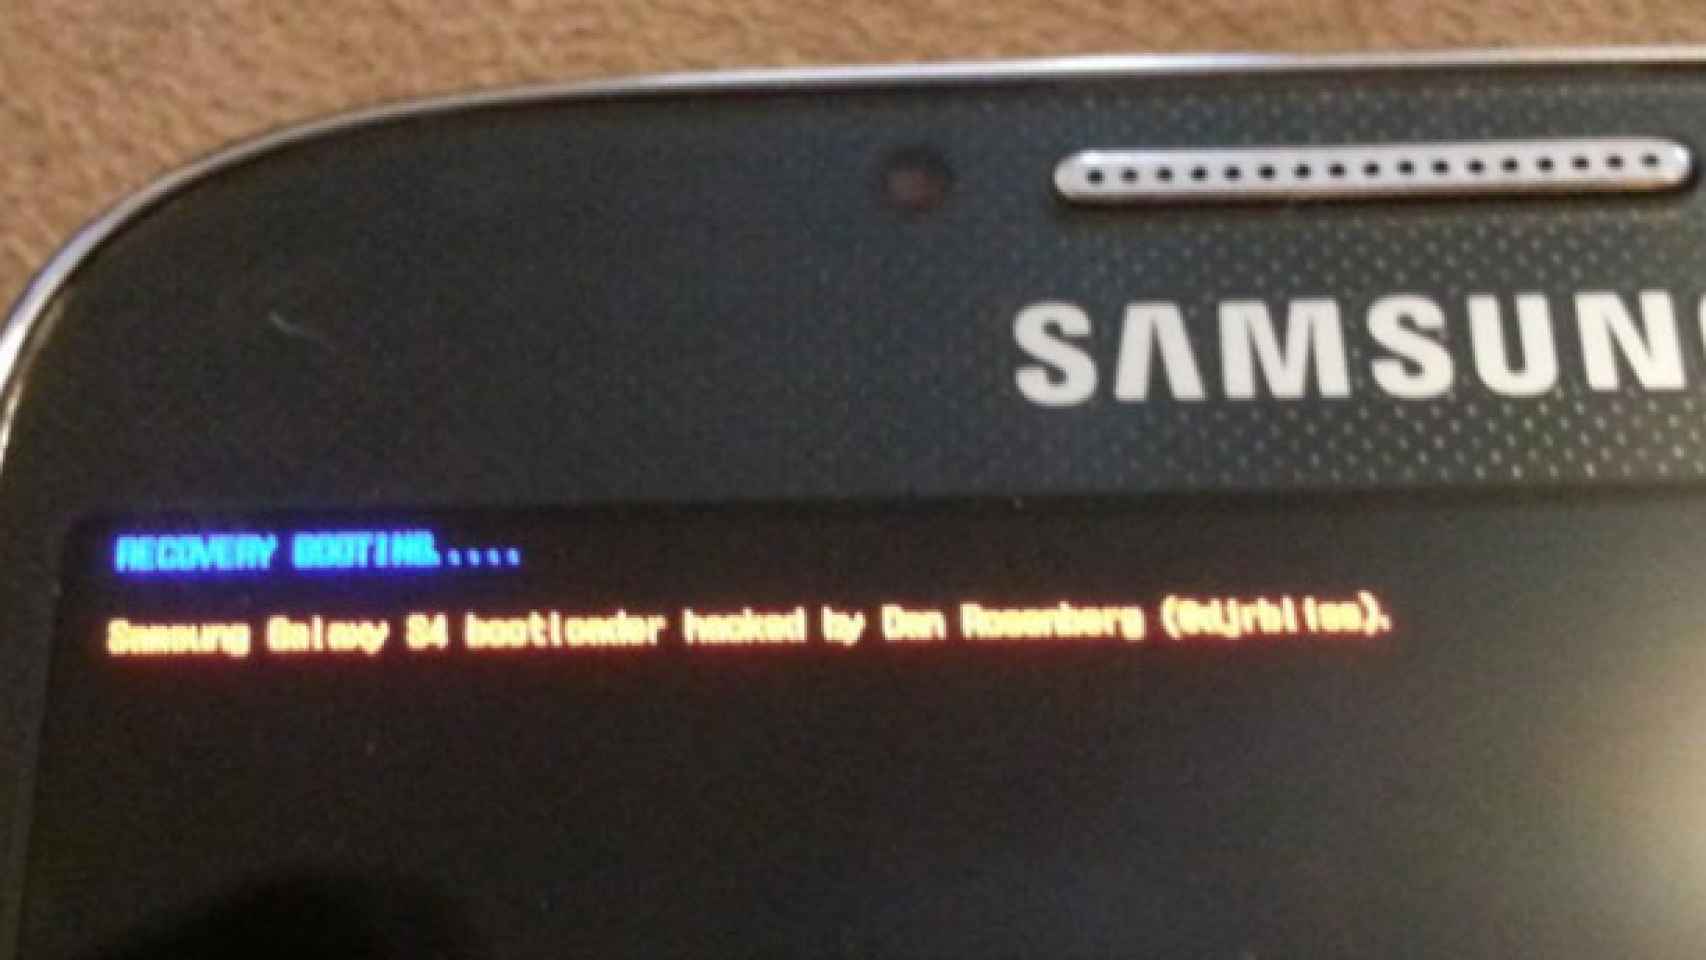 ¿Qué es el bootloader, y porqué es importante que se haya desbloqueado el del Galaxy S4?